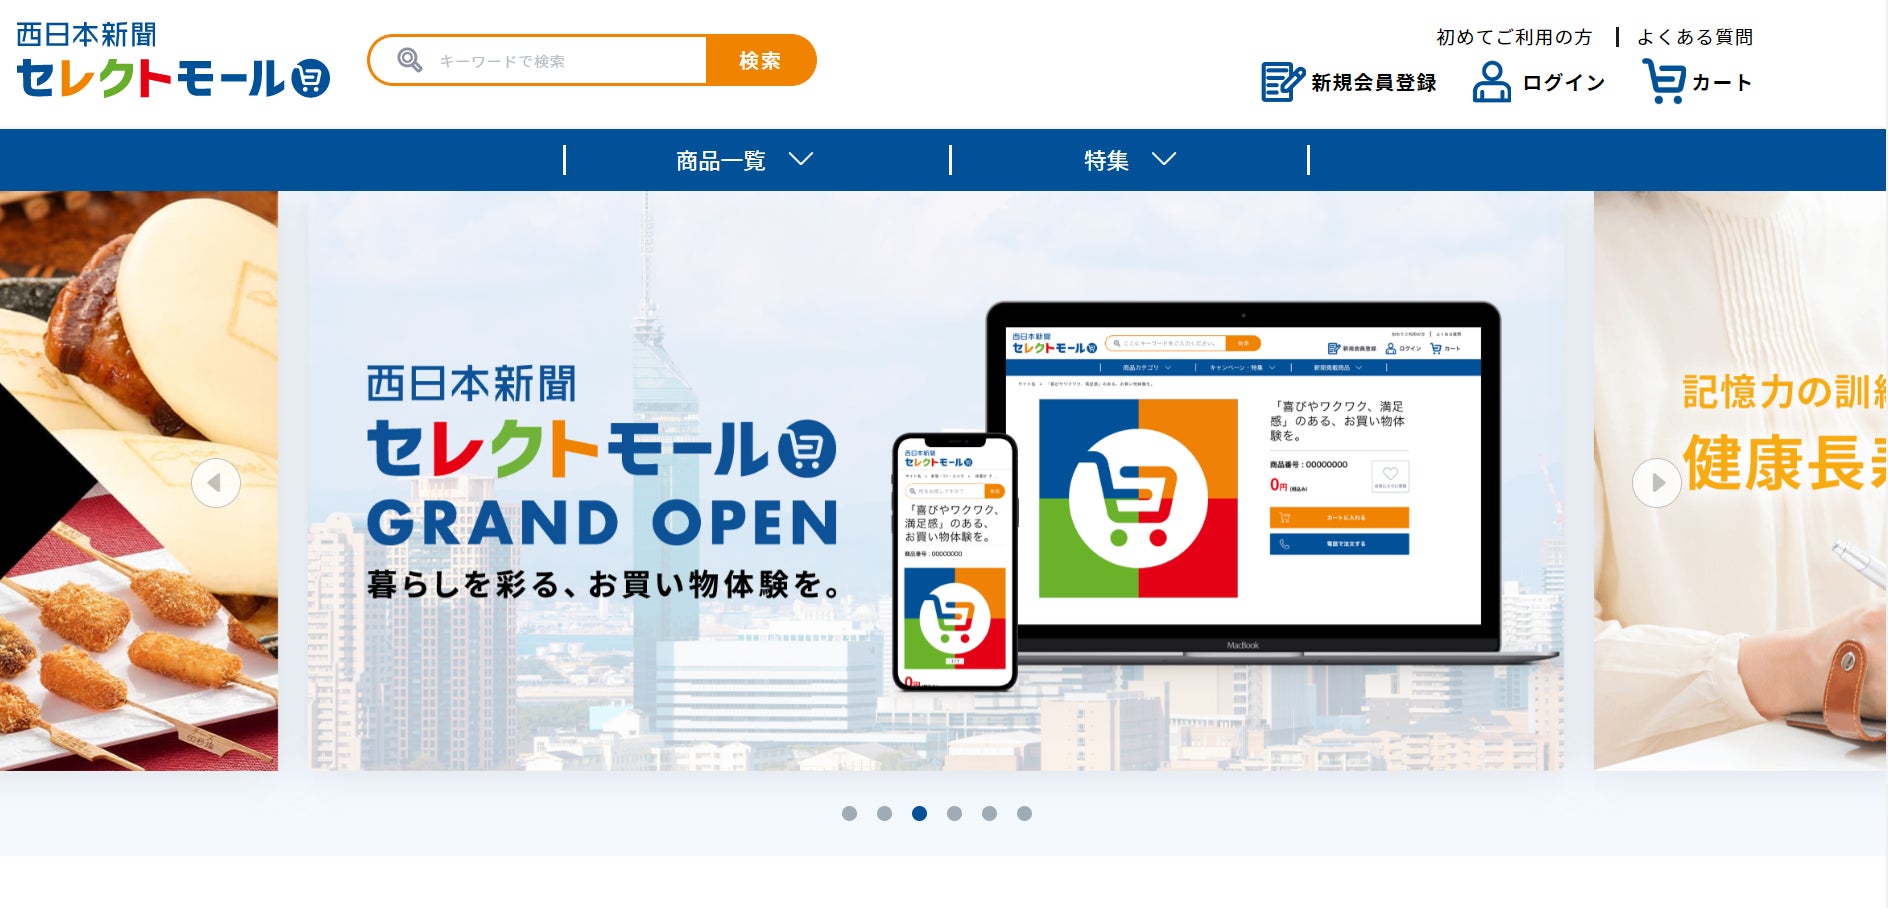 「西日本新聞社」×「GREEN FUNDING」提携関係強化、クラウドファンディング事業を「西日本新聞 WE START」へリニューアルアップデートのサブ画像3